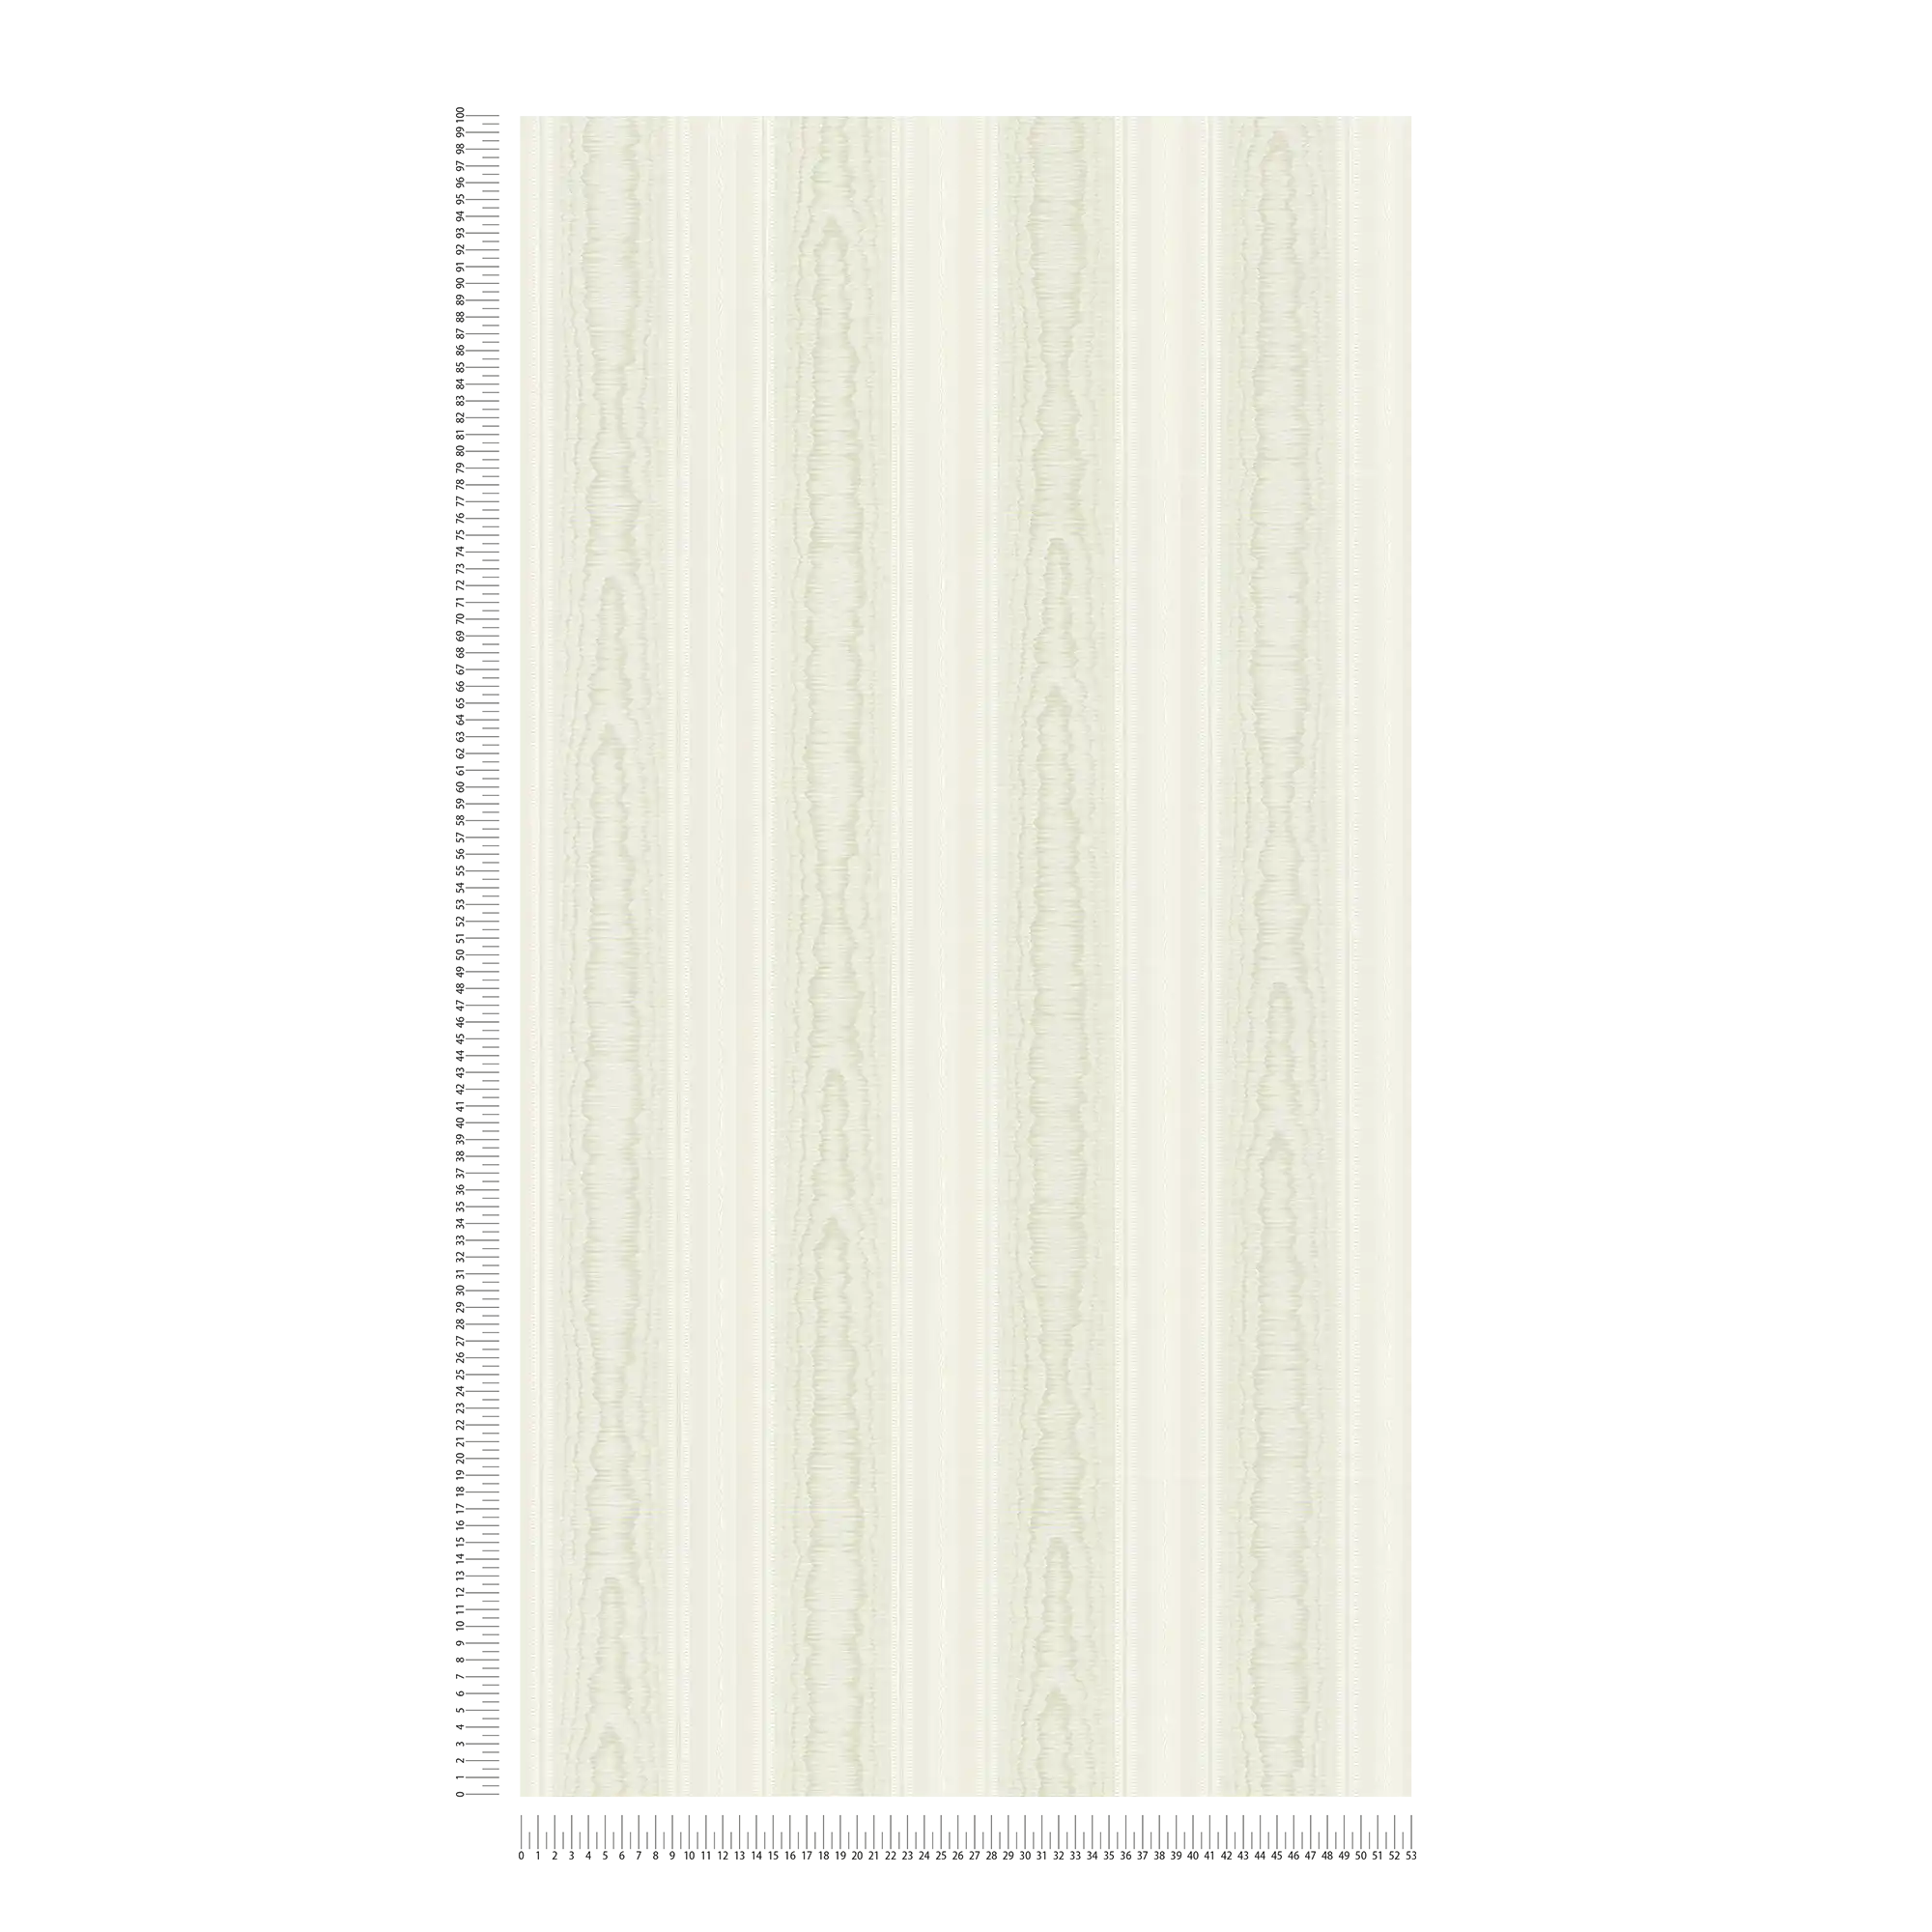             Luxus Streifen Tapete mit Moiré Design – Grün, Weiß
        